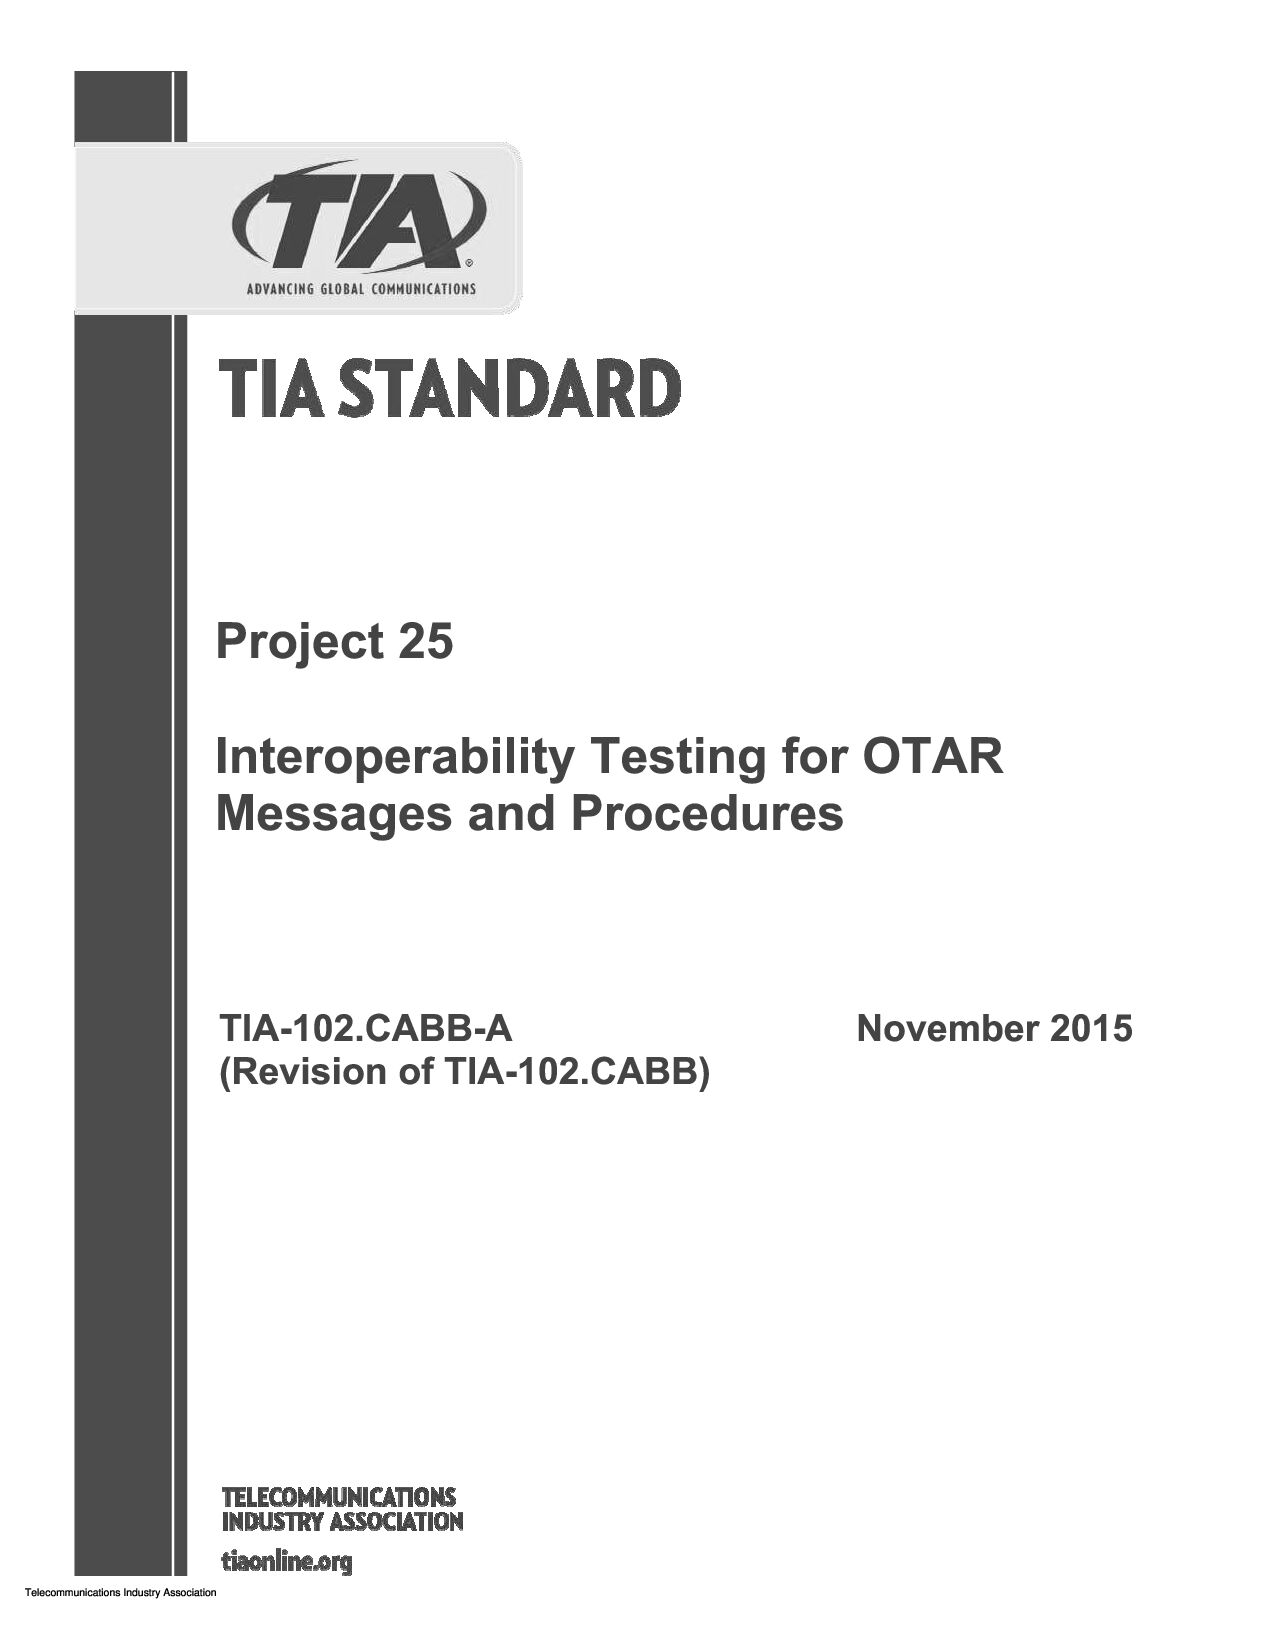 TIA-102.CABB-A-2015